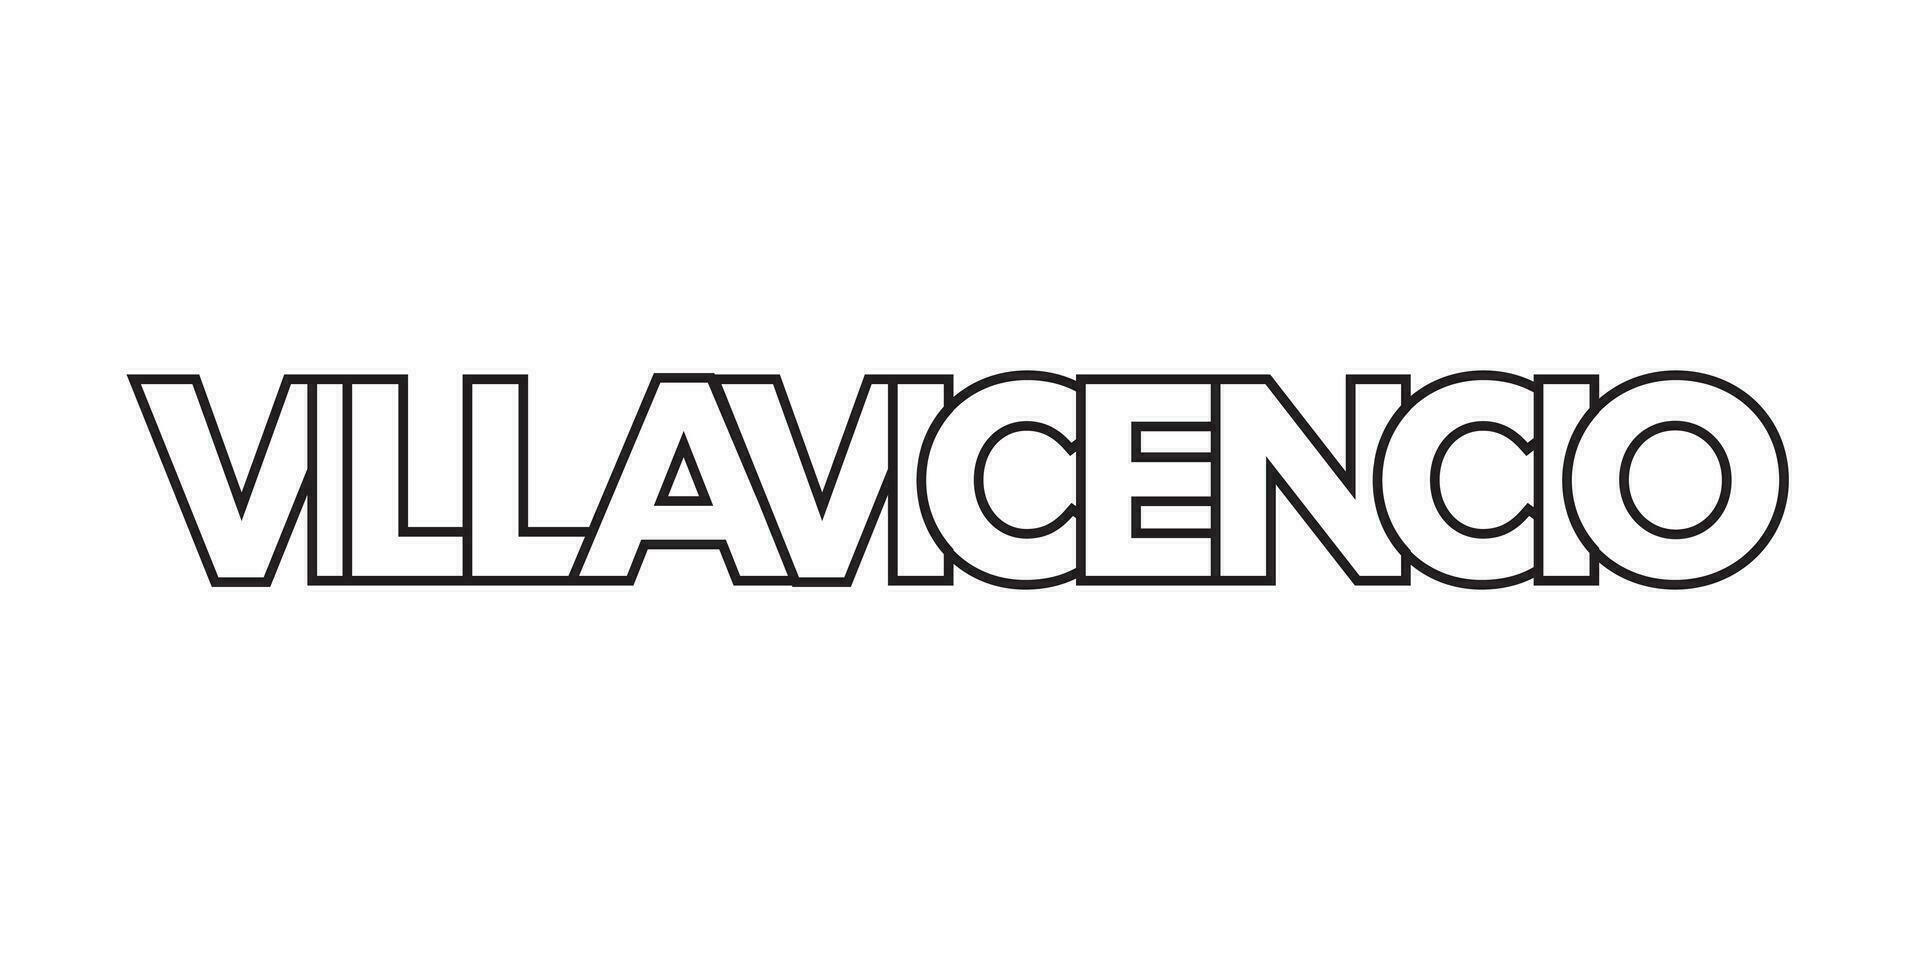 villavicencio i de colombia emblem. de design funktioner en geometrisk stil, vektor illustration med djärv typografi i en modern font. de grafisk slogan text.